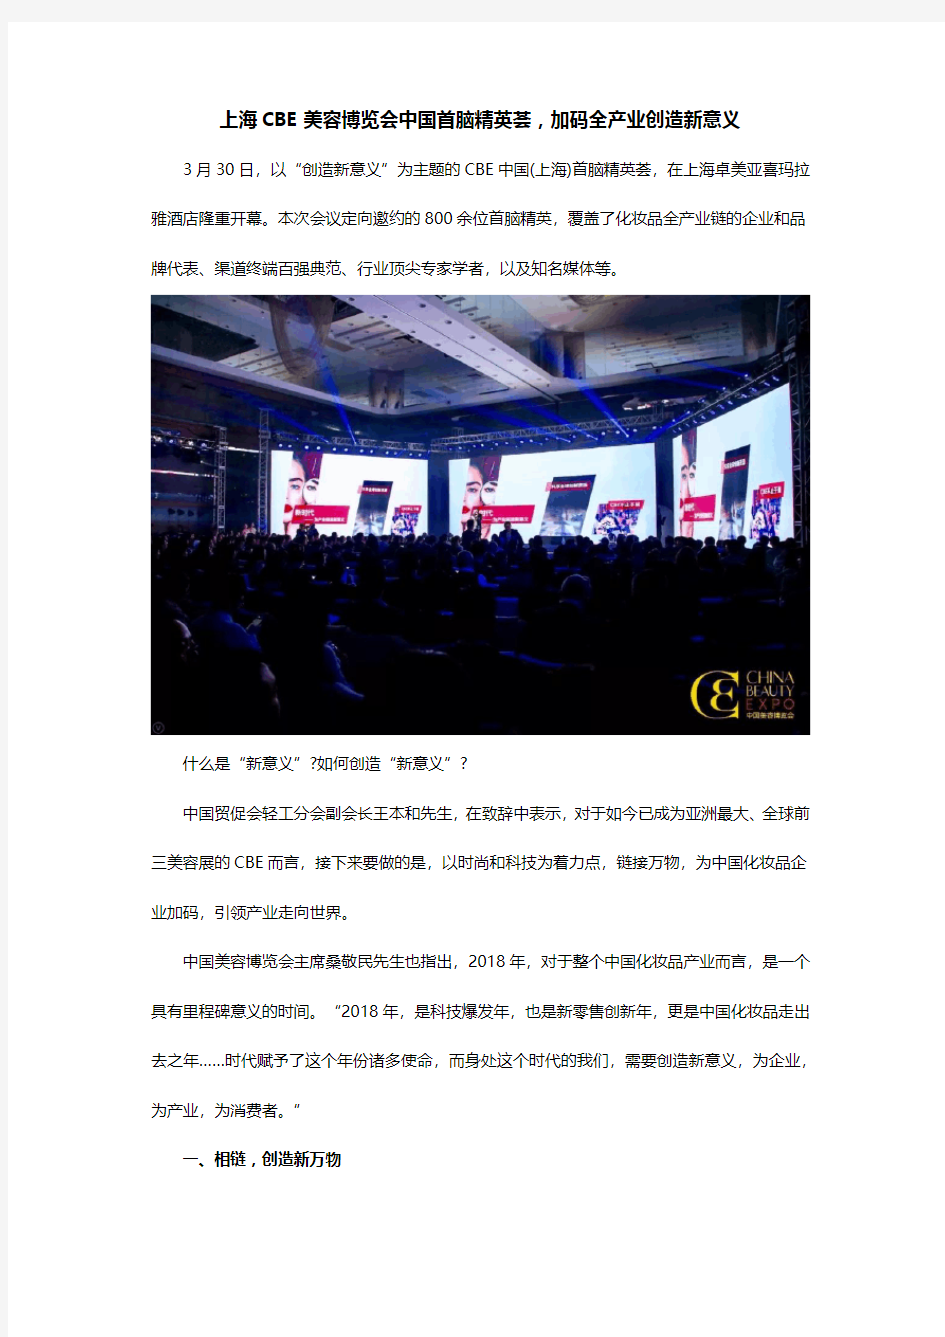 上海CBE美容博览会中国首脑精英荟,加码全产业创造新意义